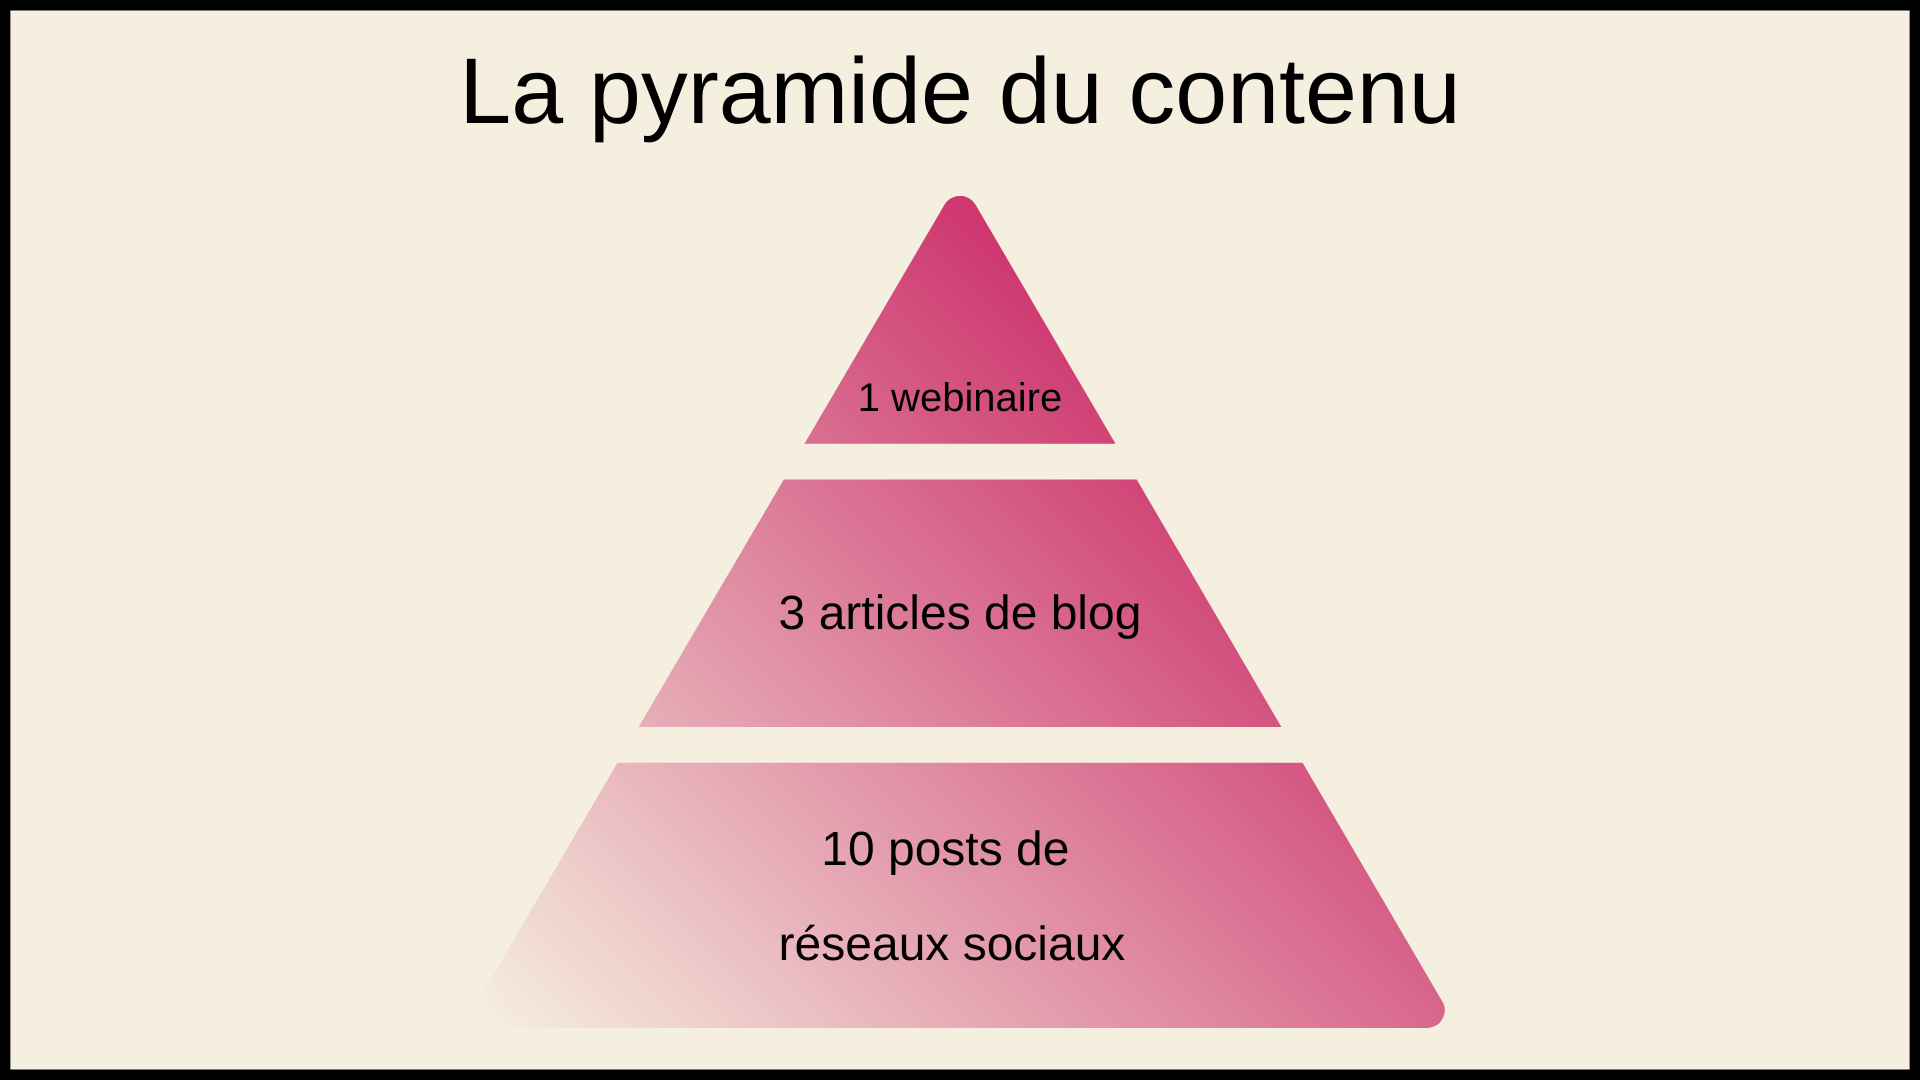 La pyramide du contenu (content repurposing)